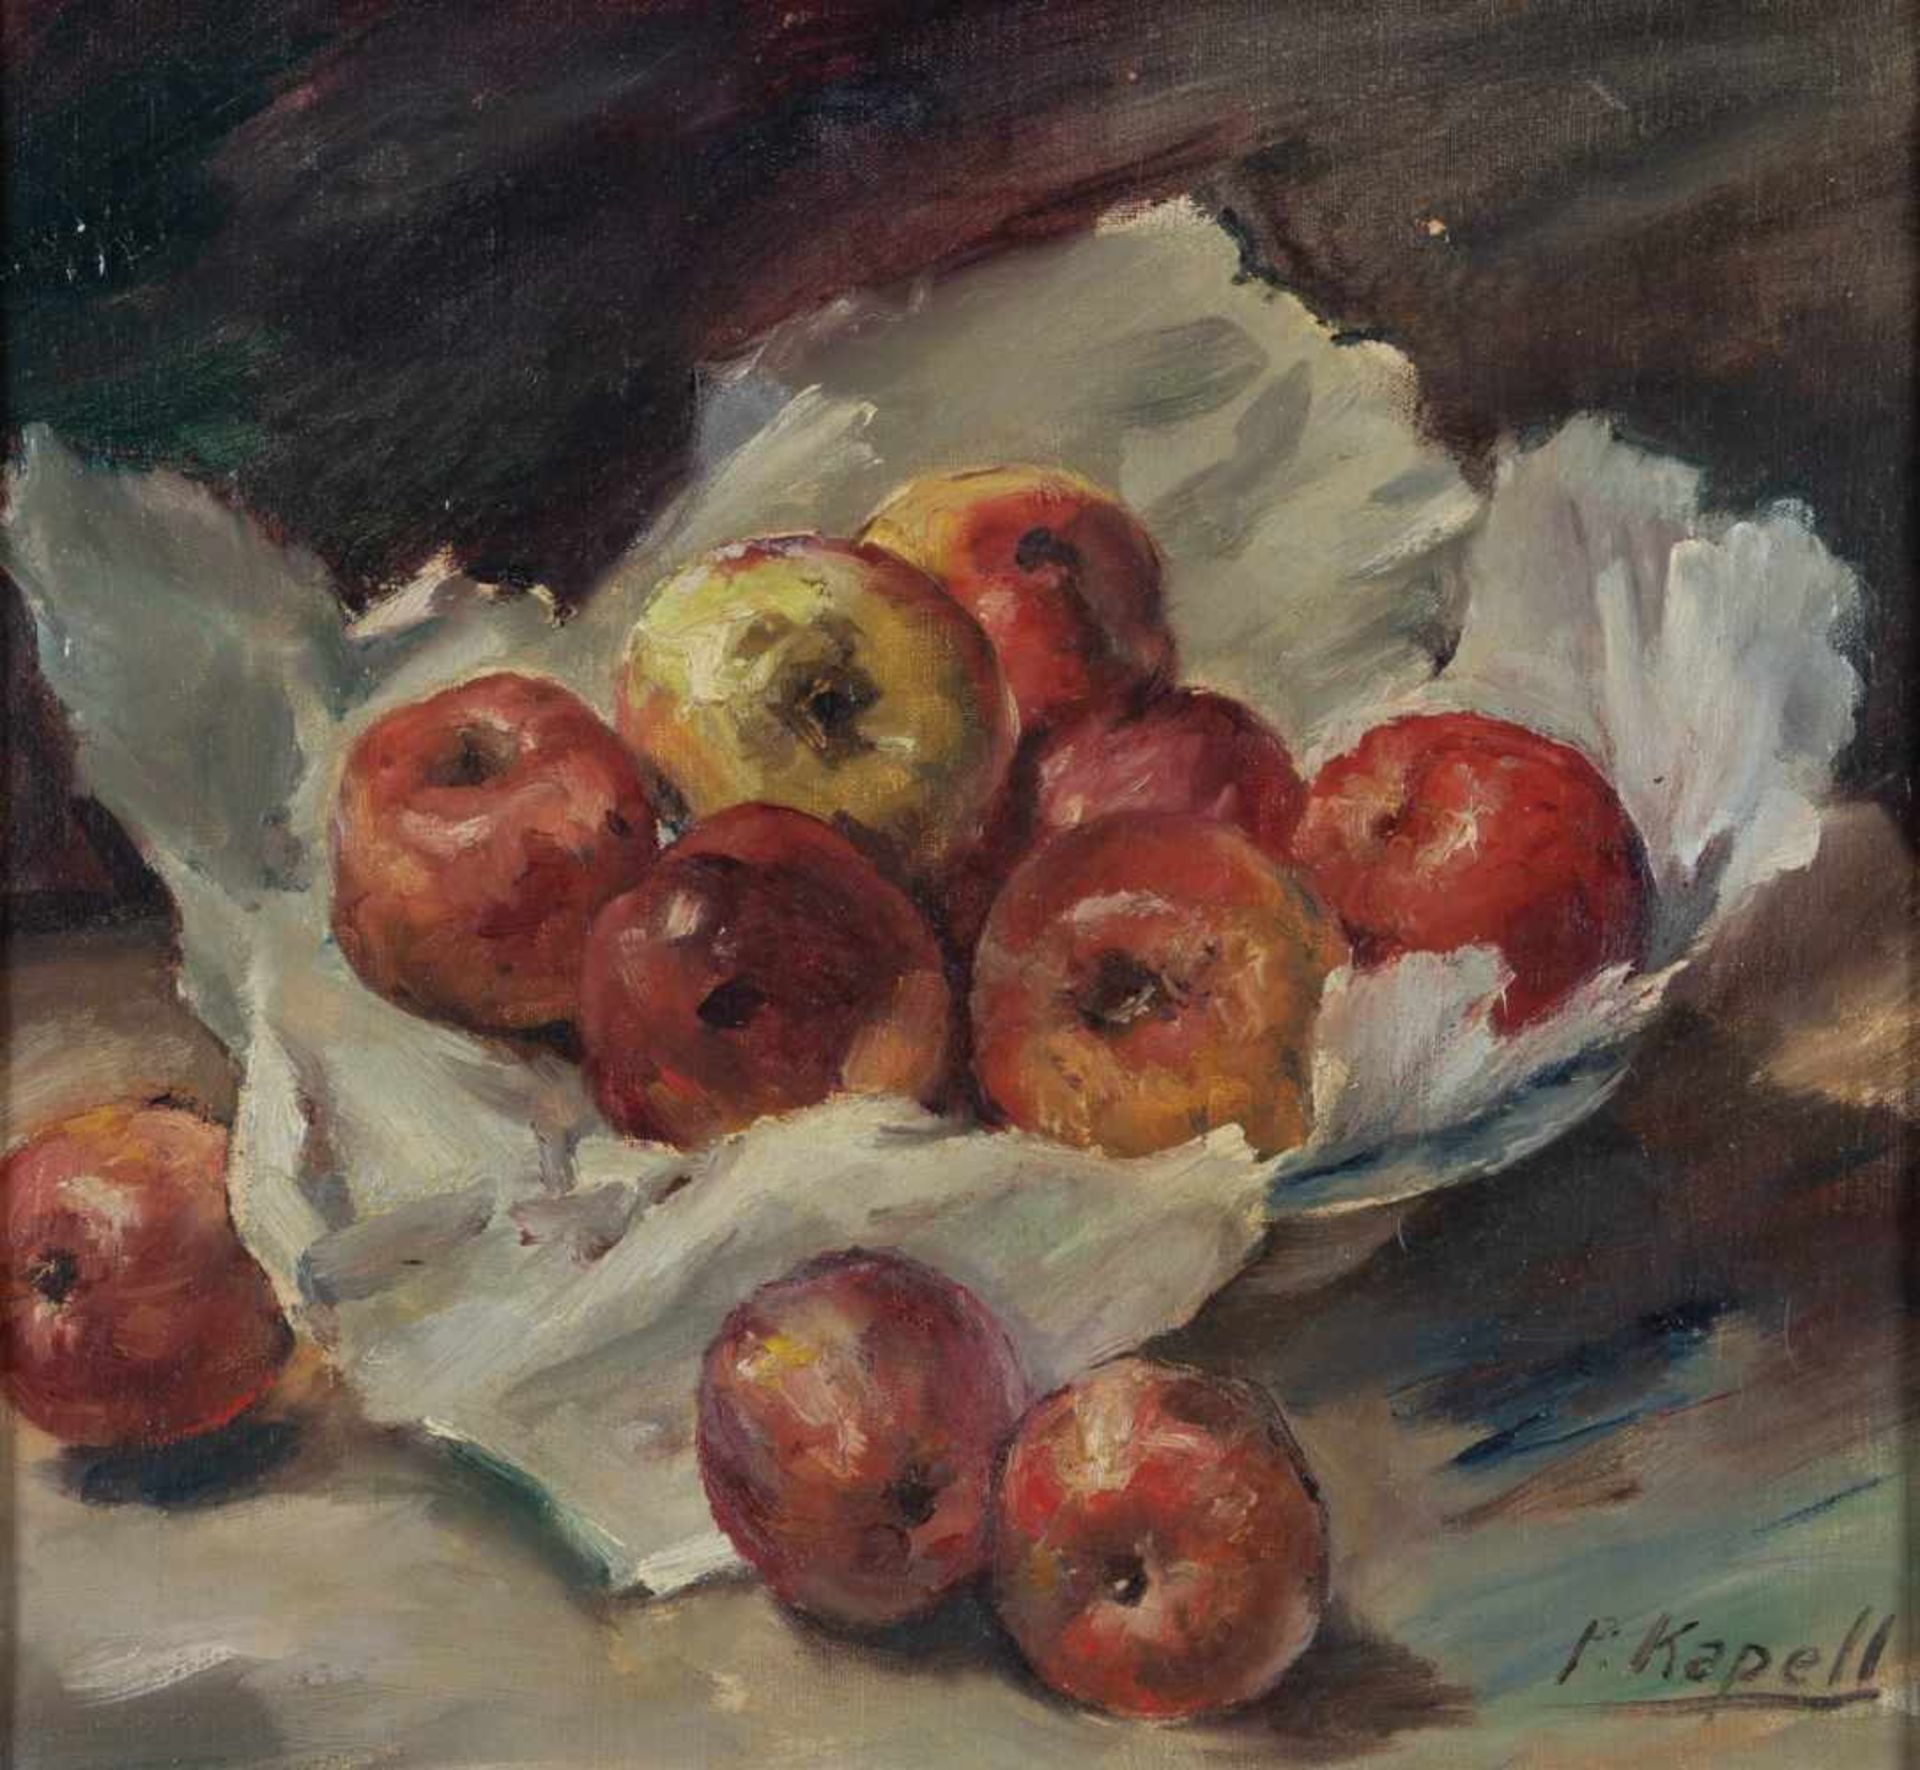 Paul Kapell1876 Ostrowo/Posen - 1943 Stuttgart Stillleben mit Äpfeln. Öl auf Leinwand. Signiert